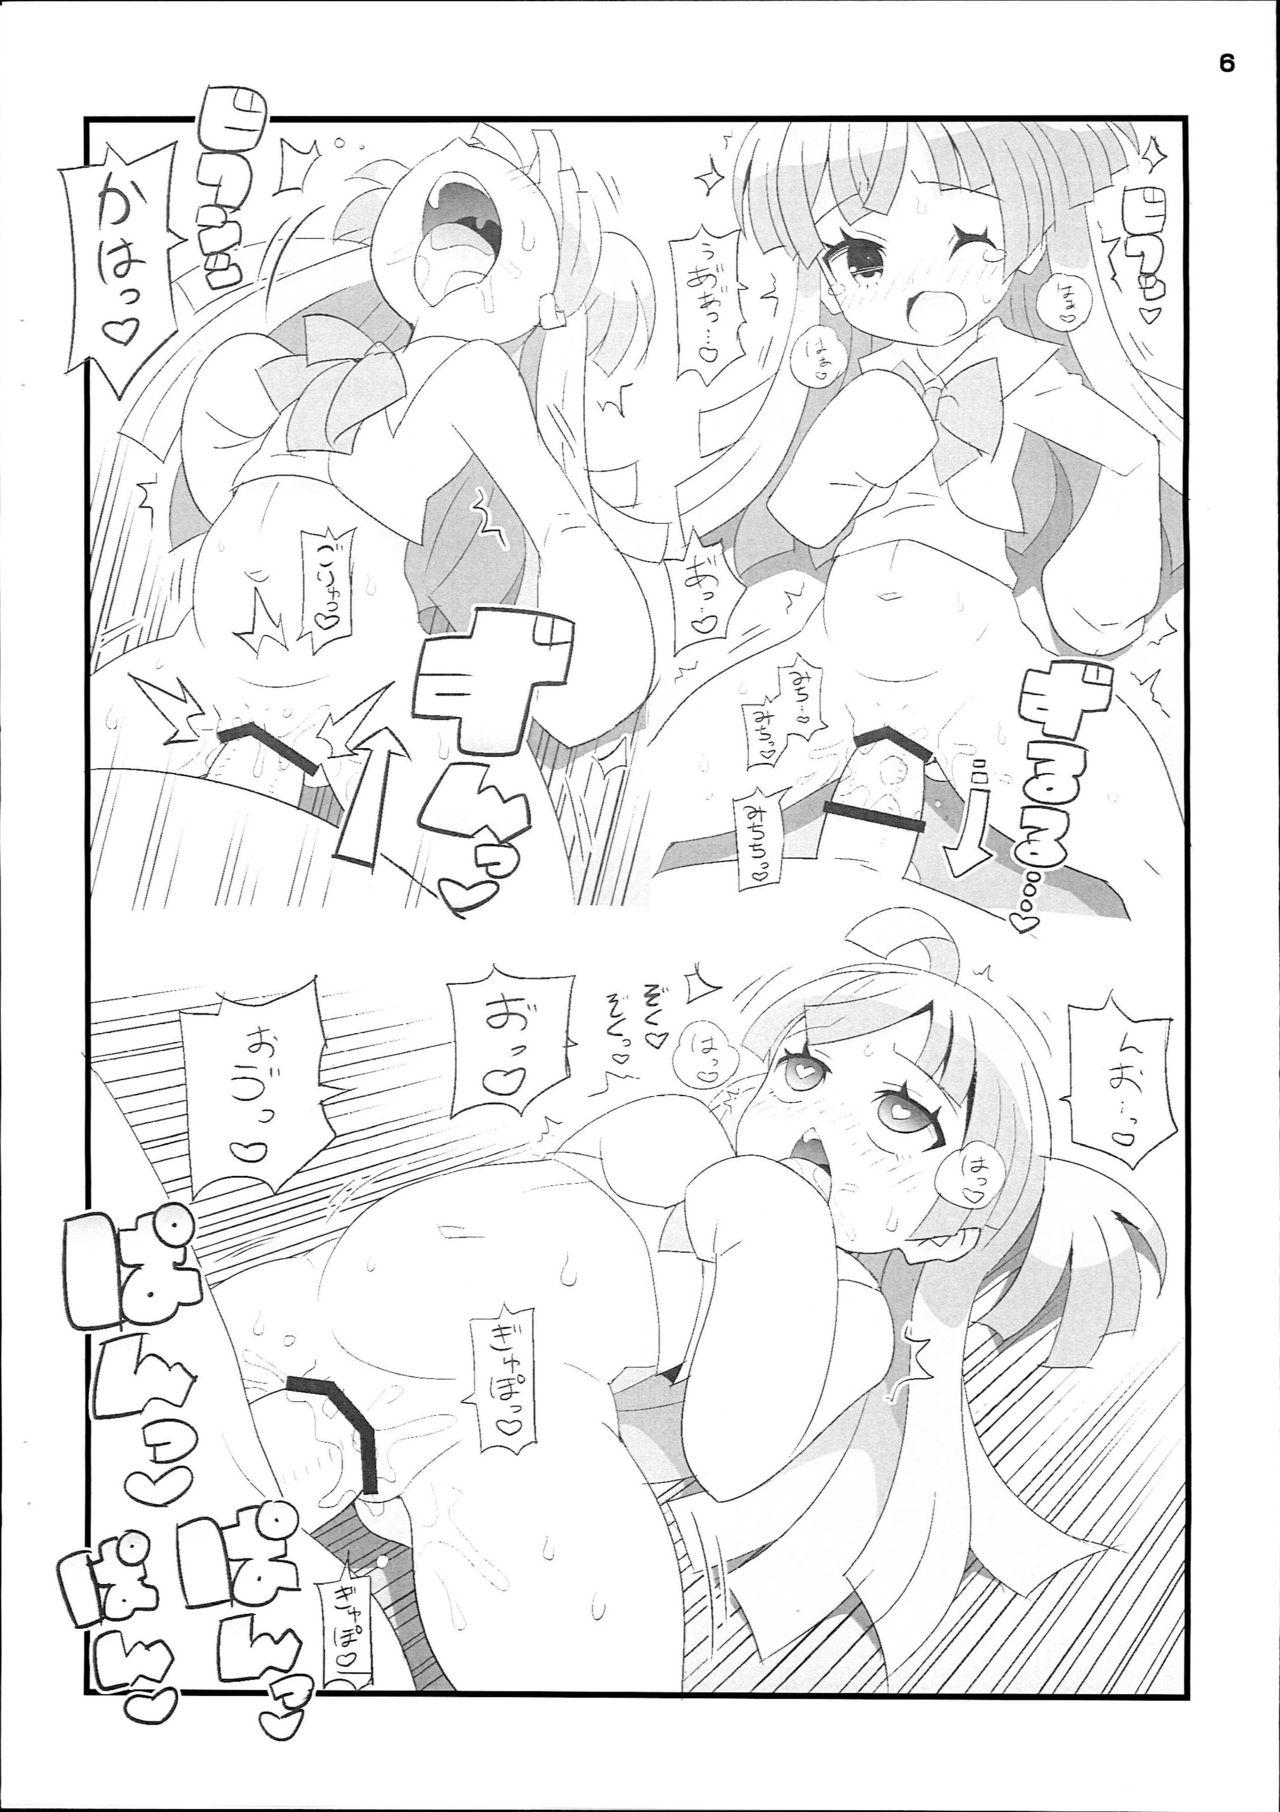 Famosa Suki Suki Chiri-chan - Pripara Plumper - Page 6